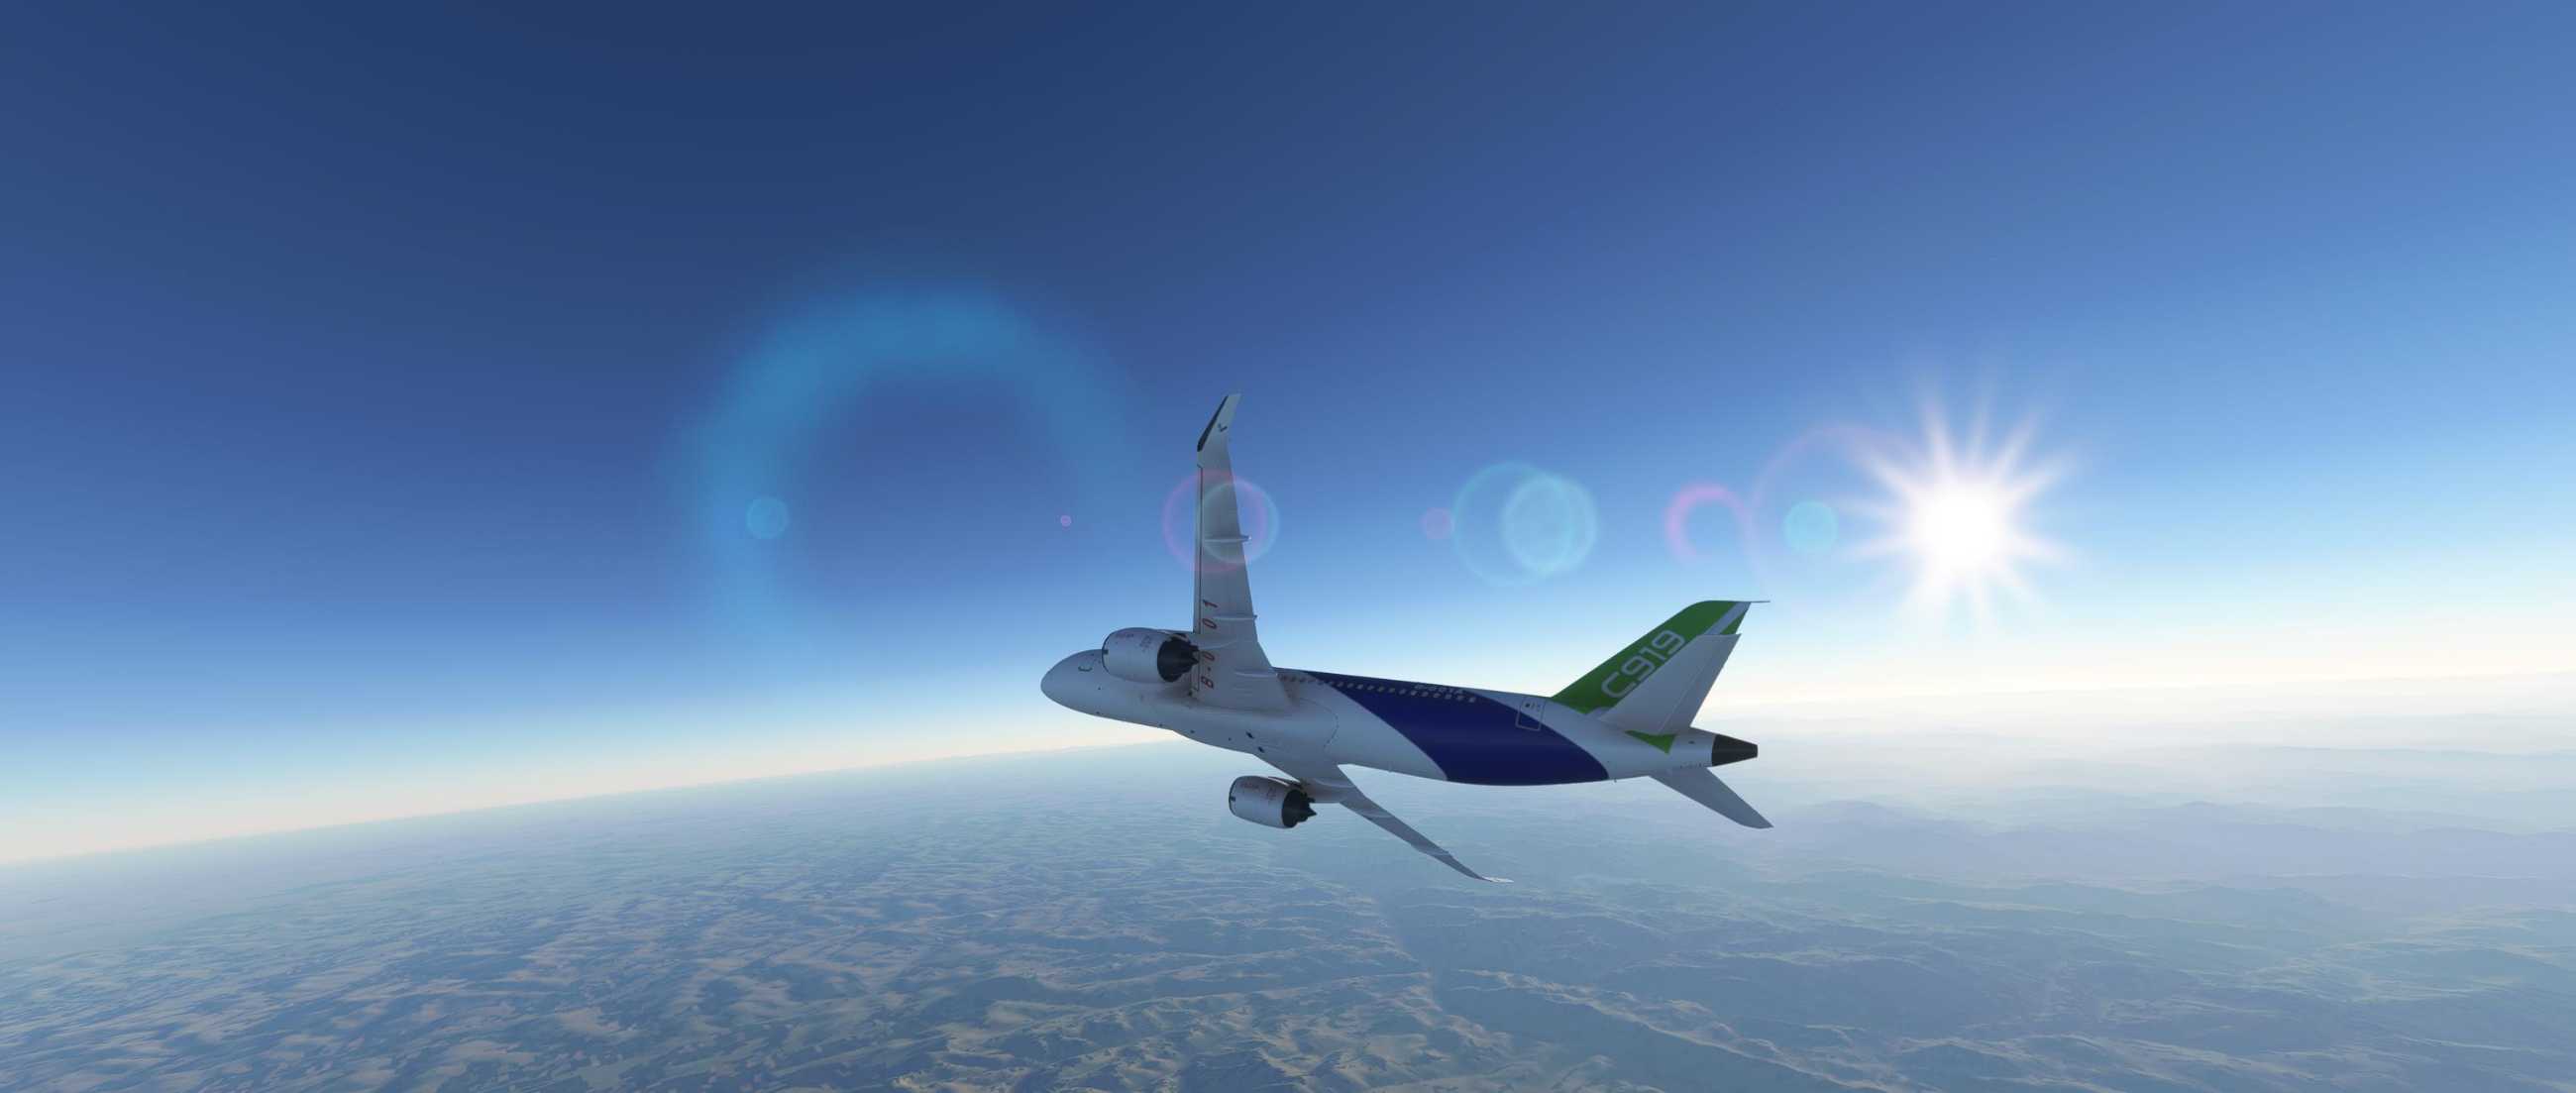 FYCYC-C919 国产大飞机机模 微软模拟飞行演示-5517 